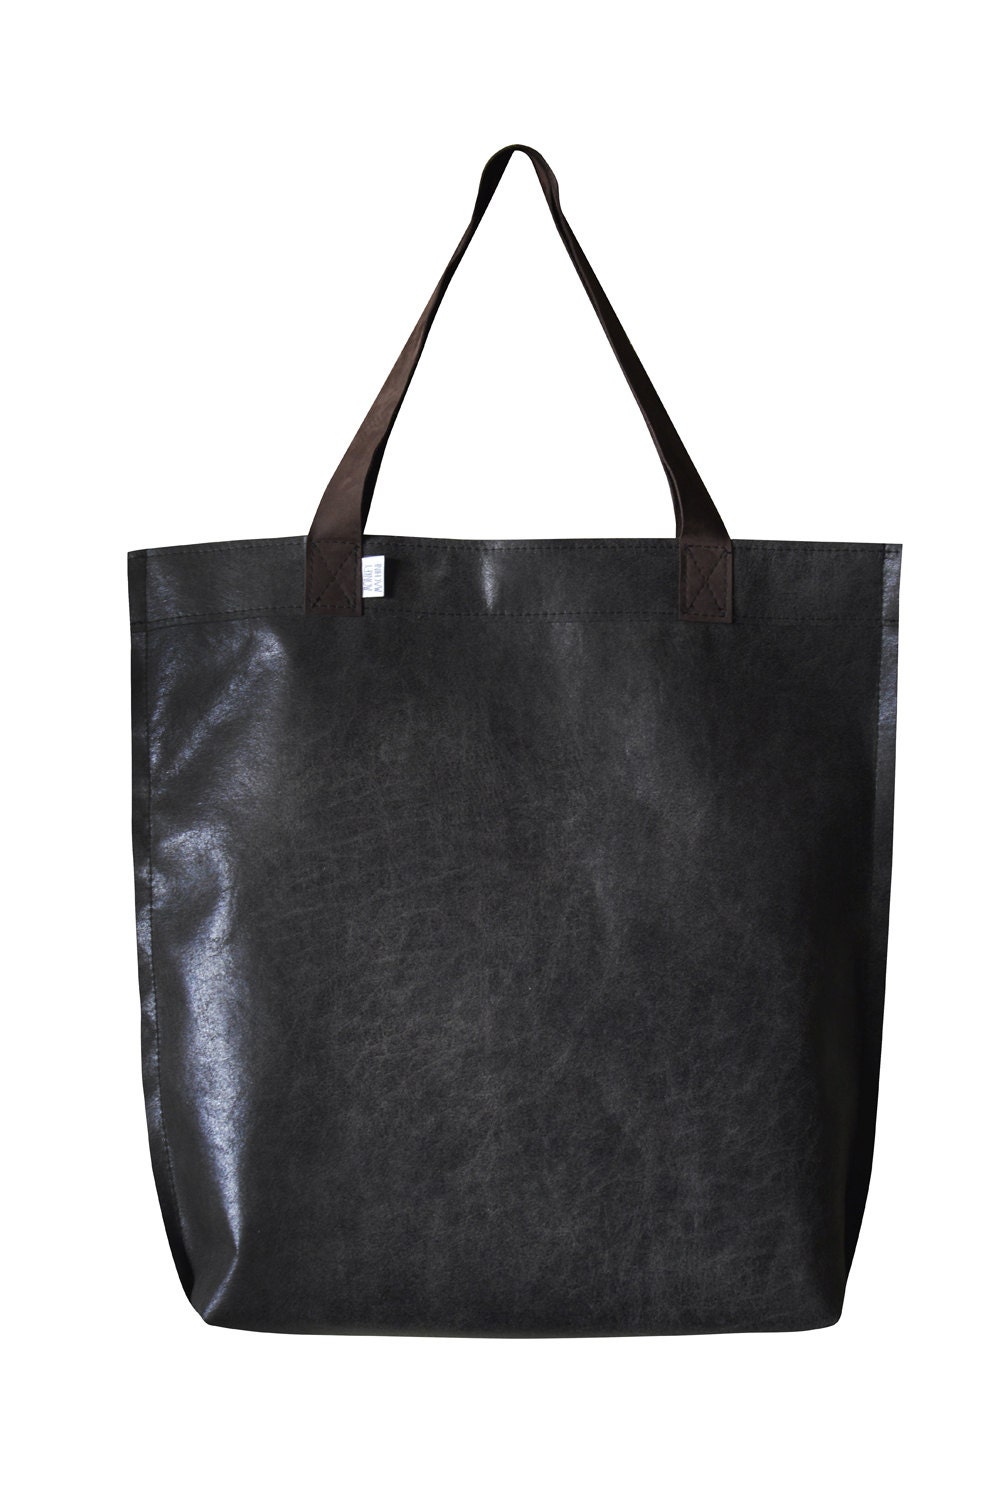 Mr M Vintage Bag Black Leather Tote Bag Large Black Tote Black Leather ...